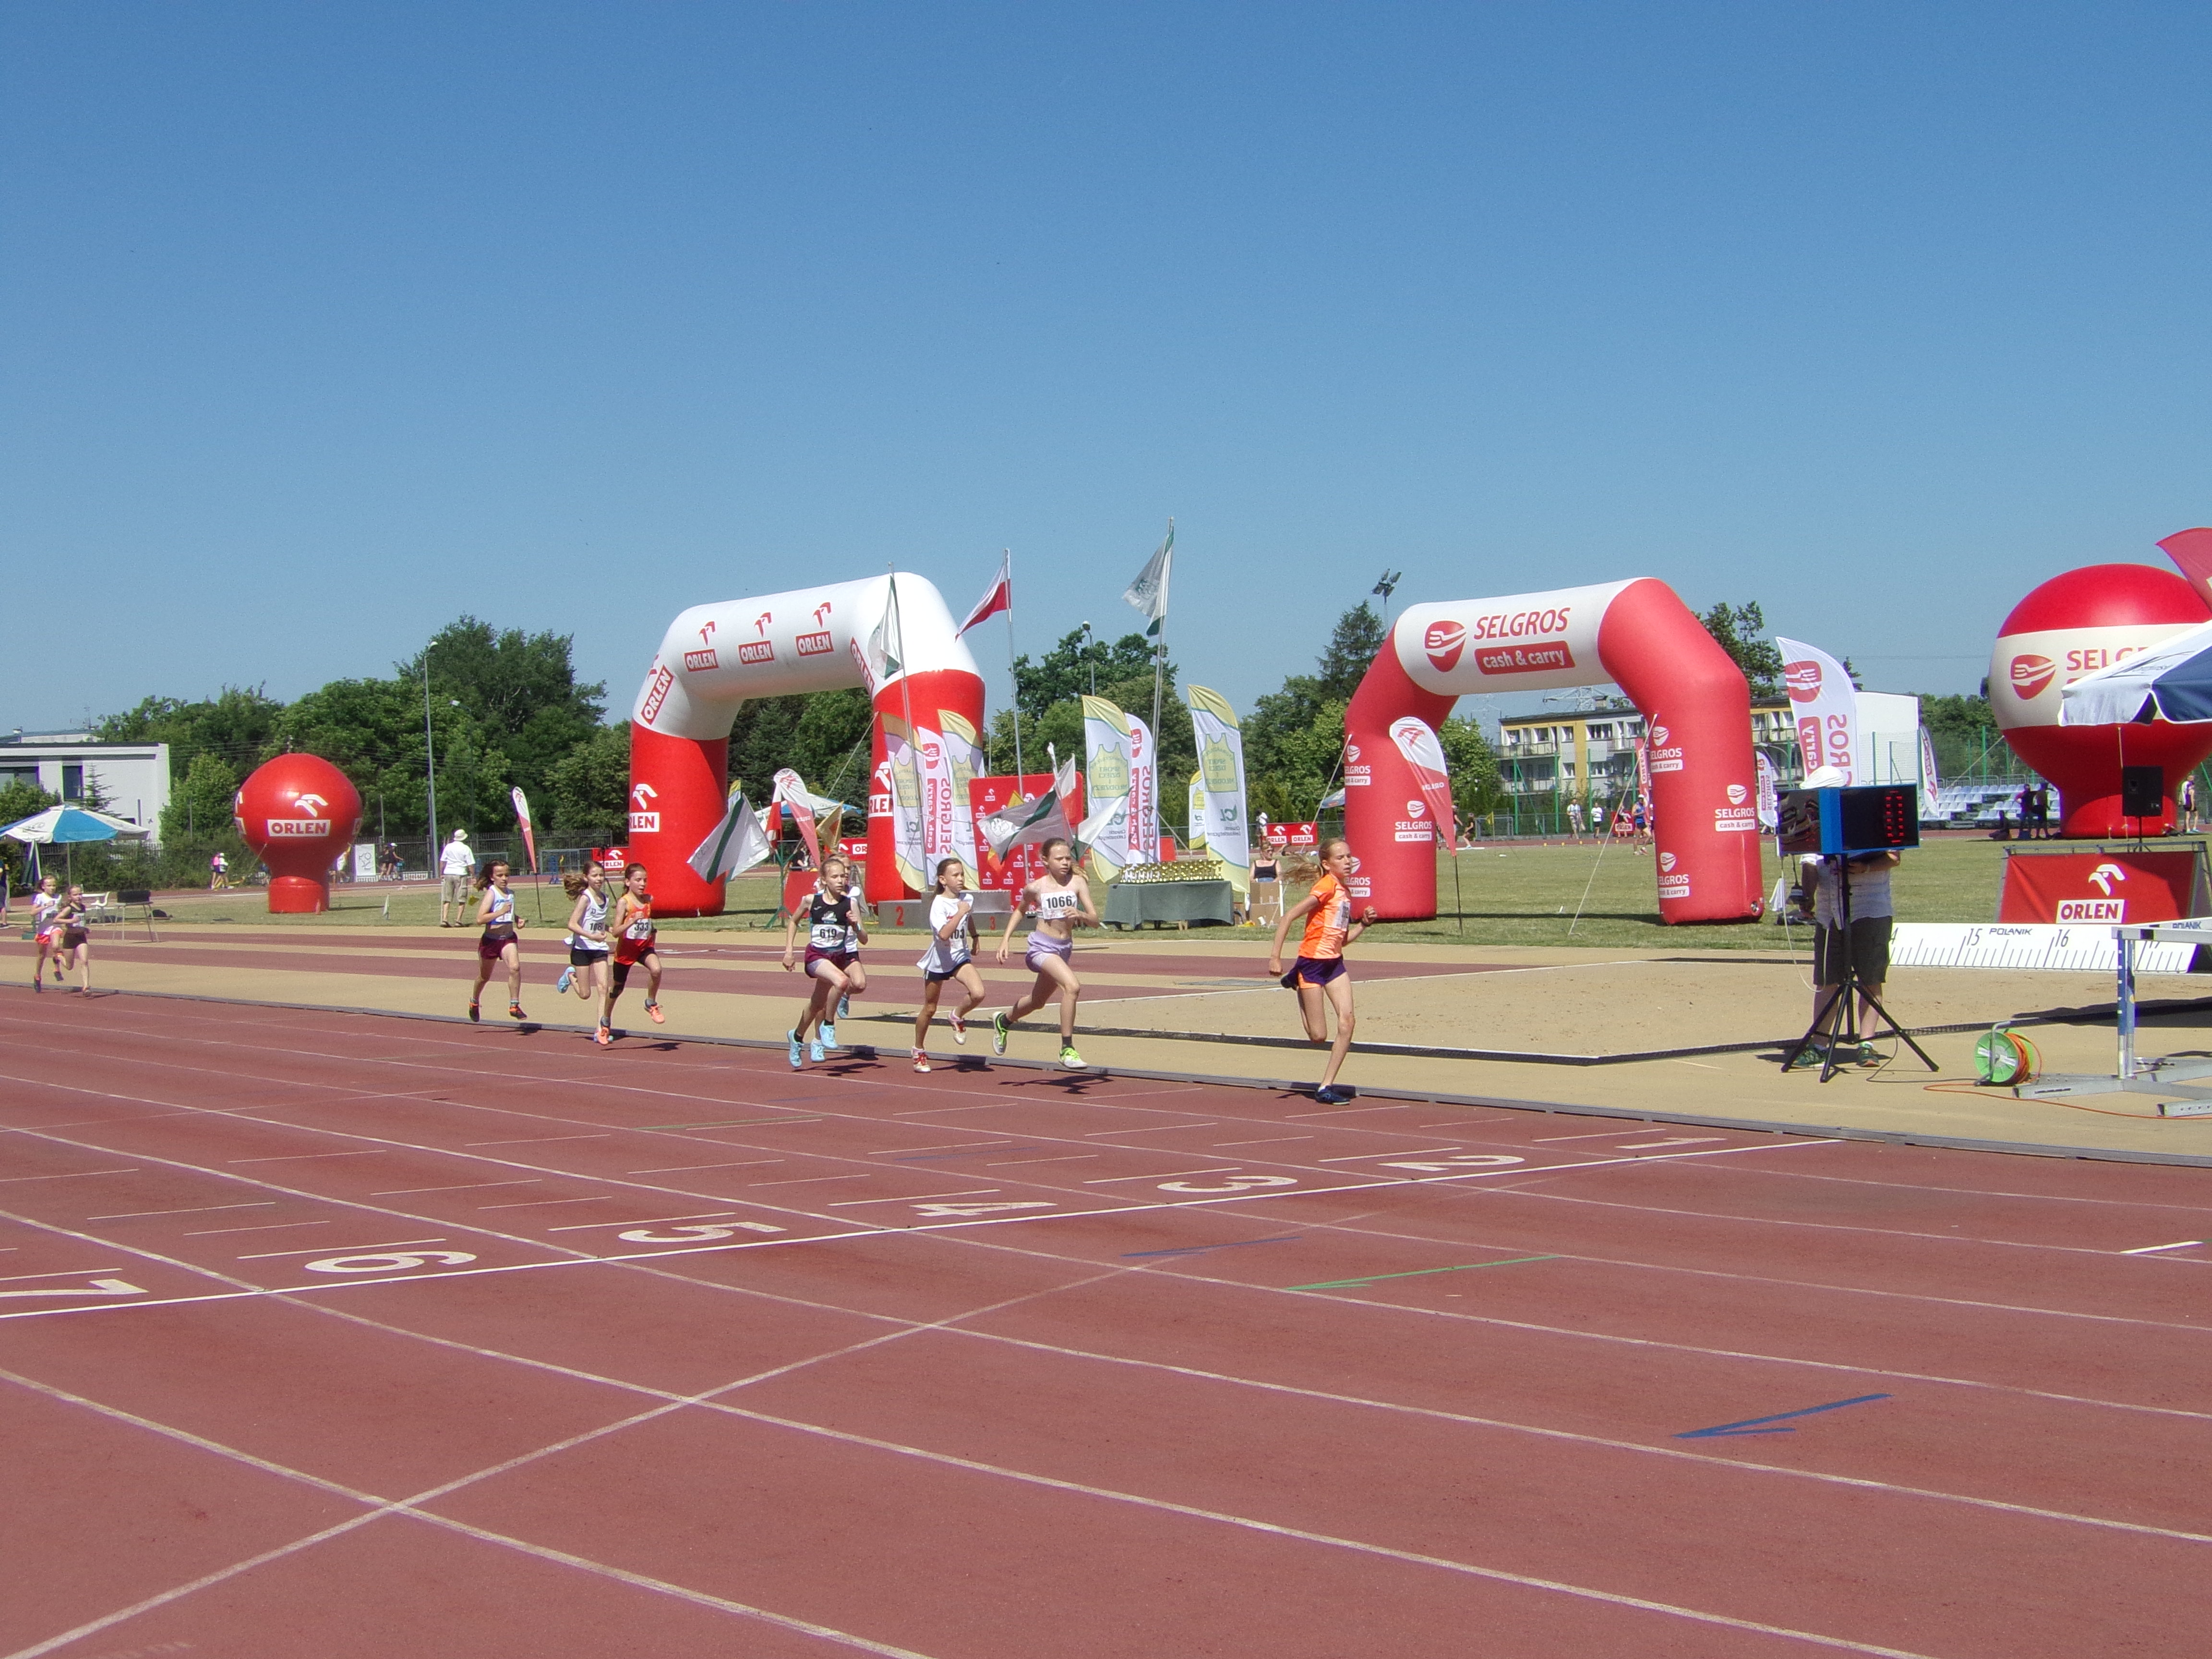 Po bieżni lekkoatletycznej biegnie dzisięć dziewczynek. W tle widać balony i flagi reklamowe.